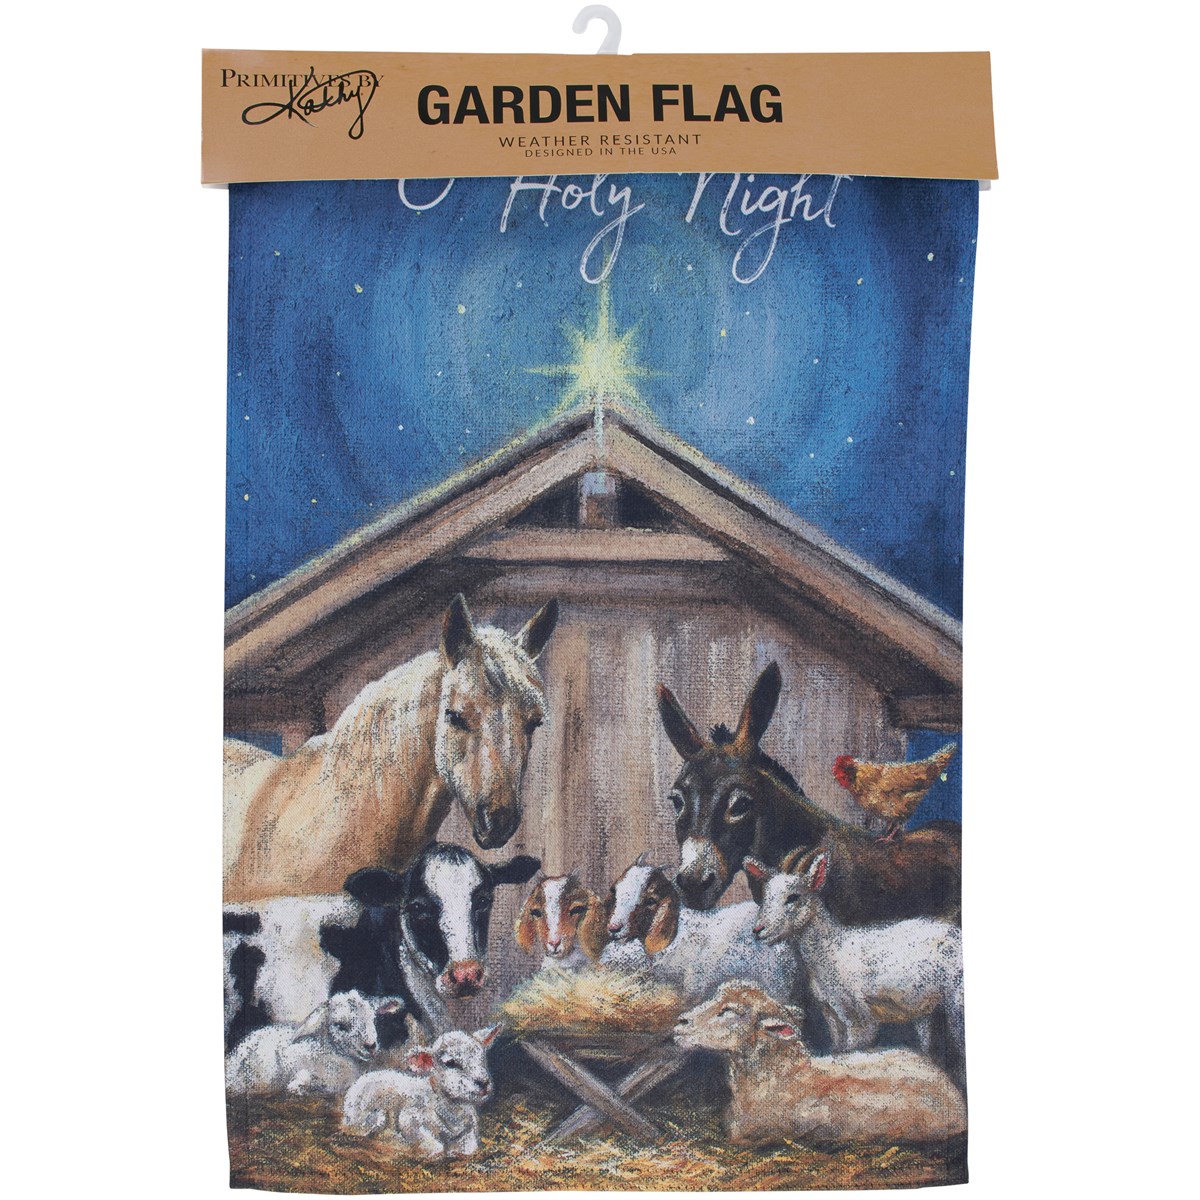 O Holy Night Garden Flag - Polyester